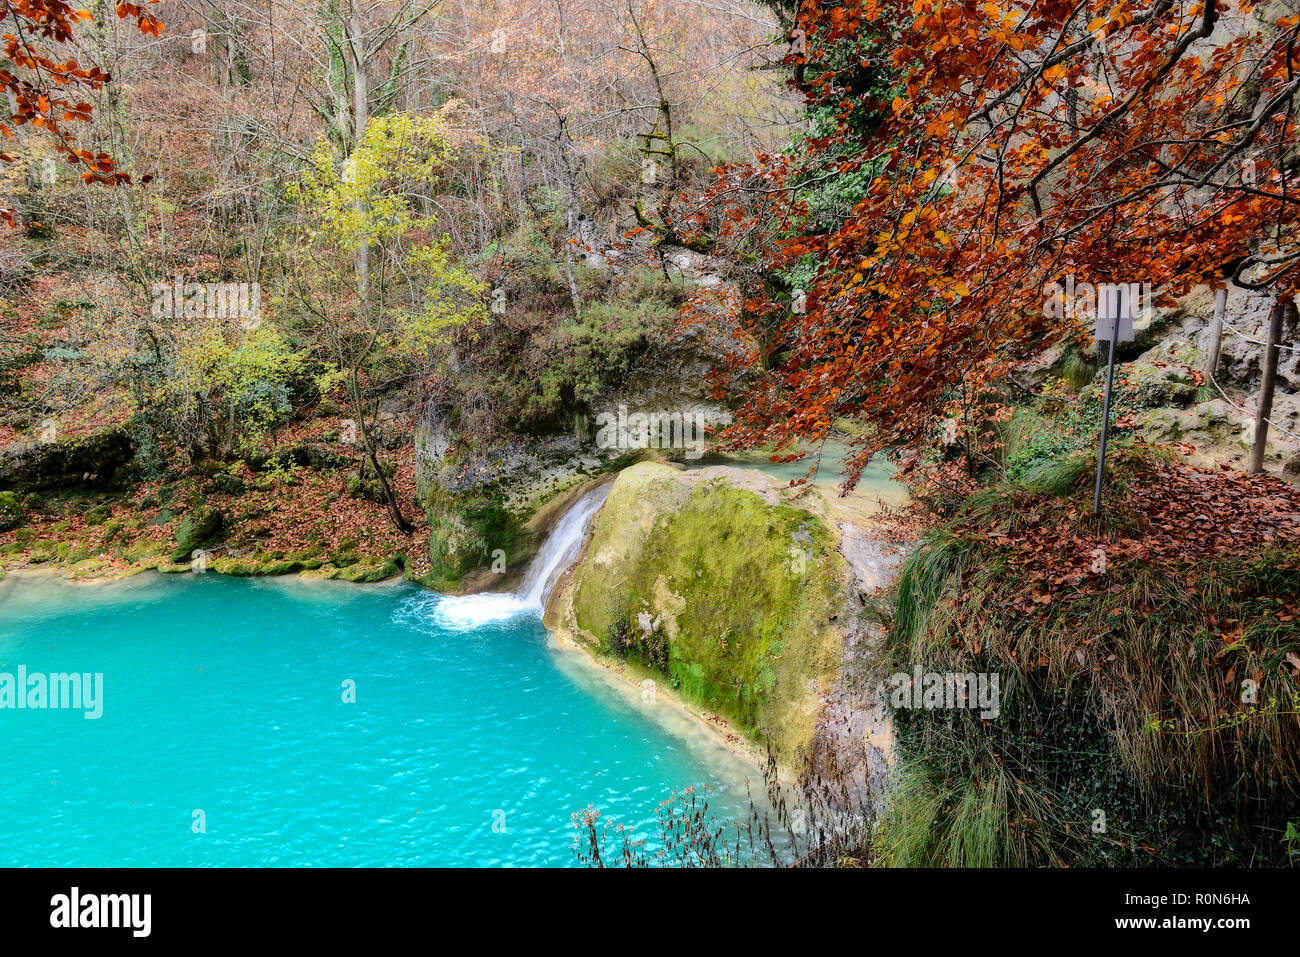 Türkisblaues Wasser in der Quelle der Urederra River Nationalpark Urbasa-Andia, Baquedano, Navarra, Spanien, Europa Stockfoto